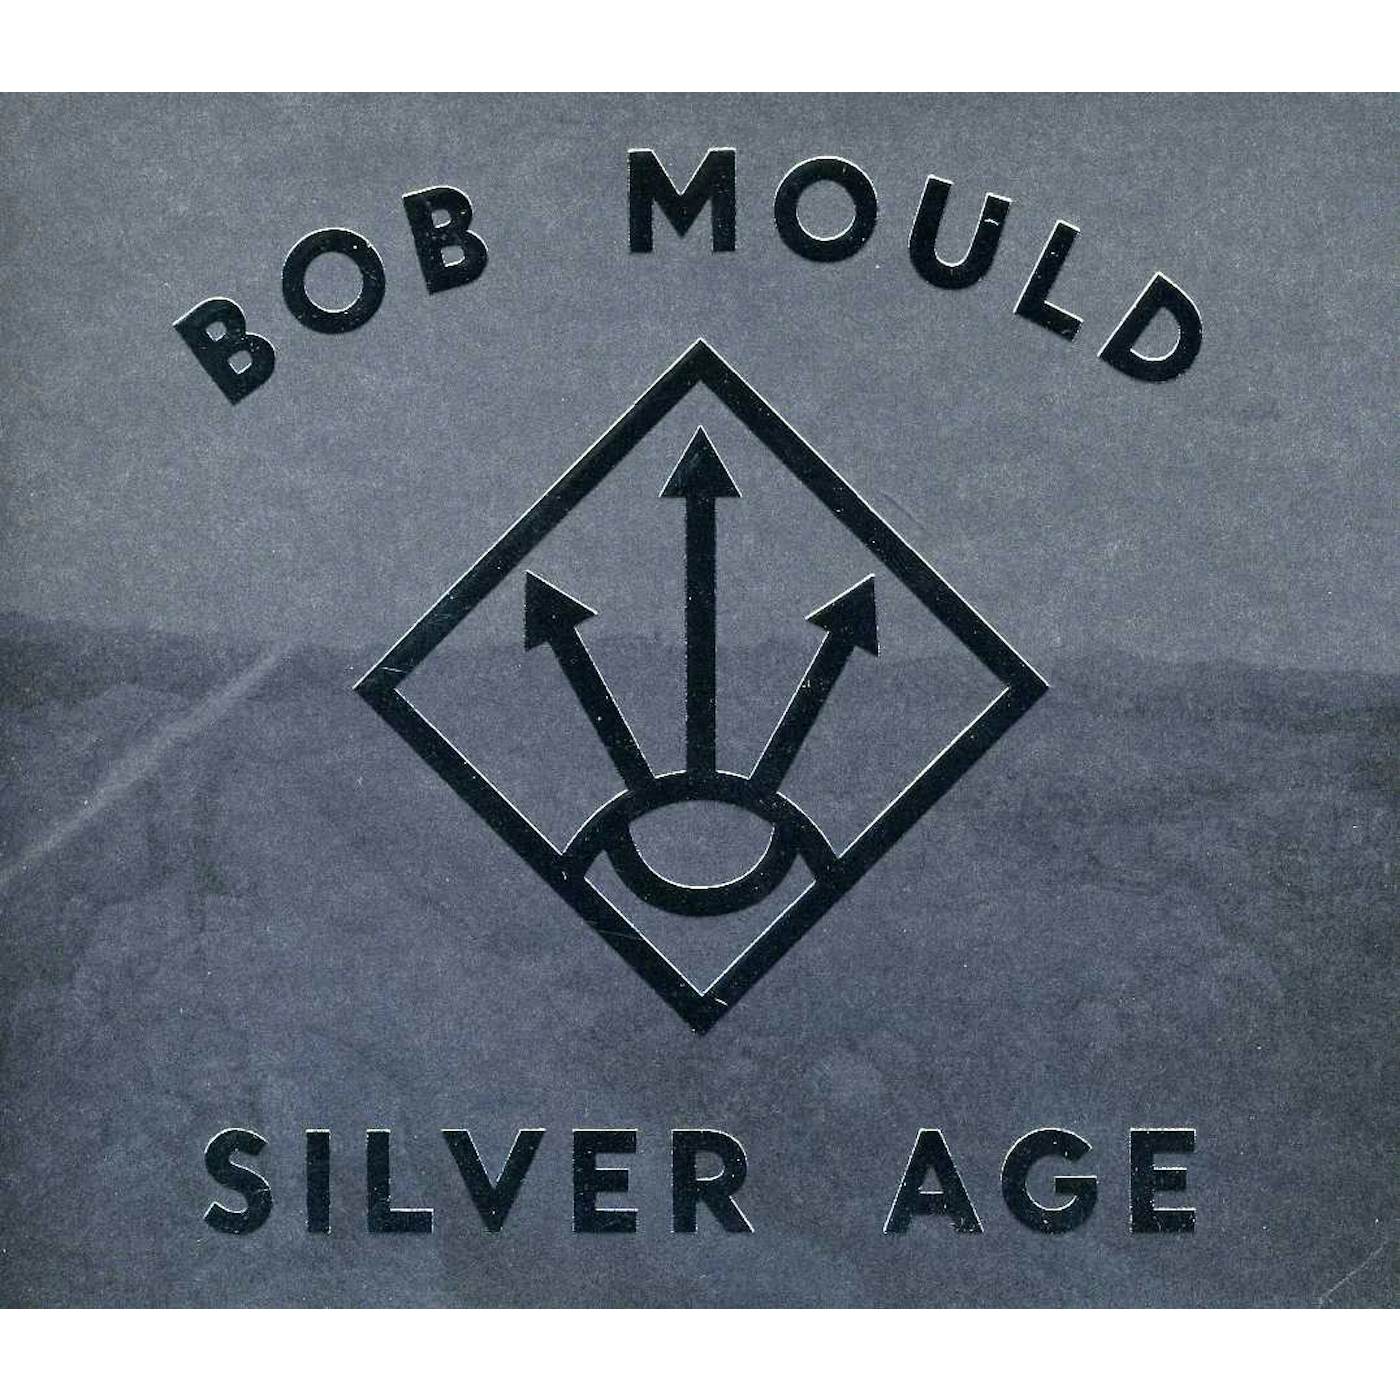 Bob Mould SILVER AGE CD